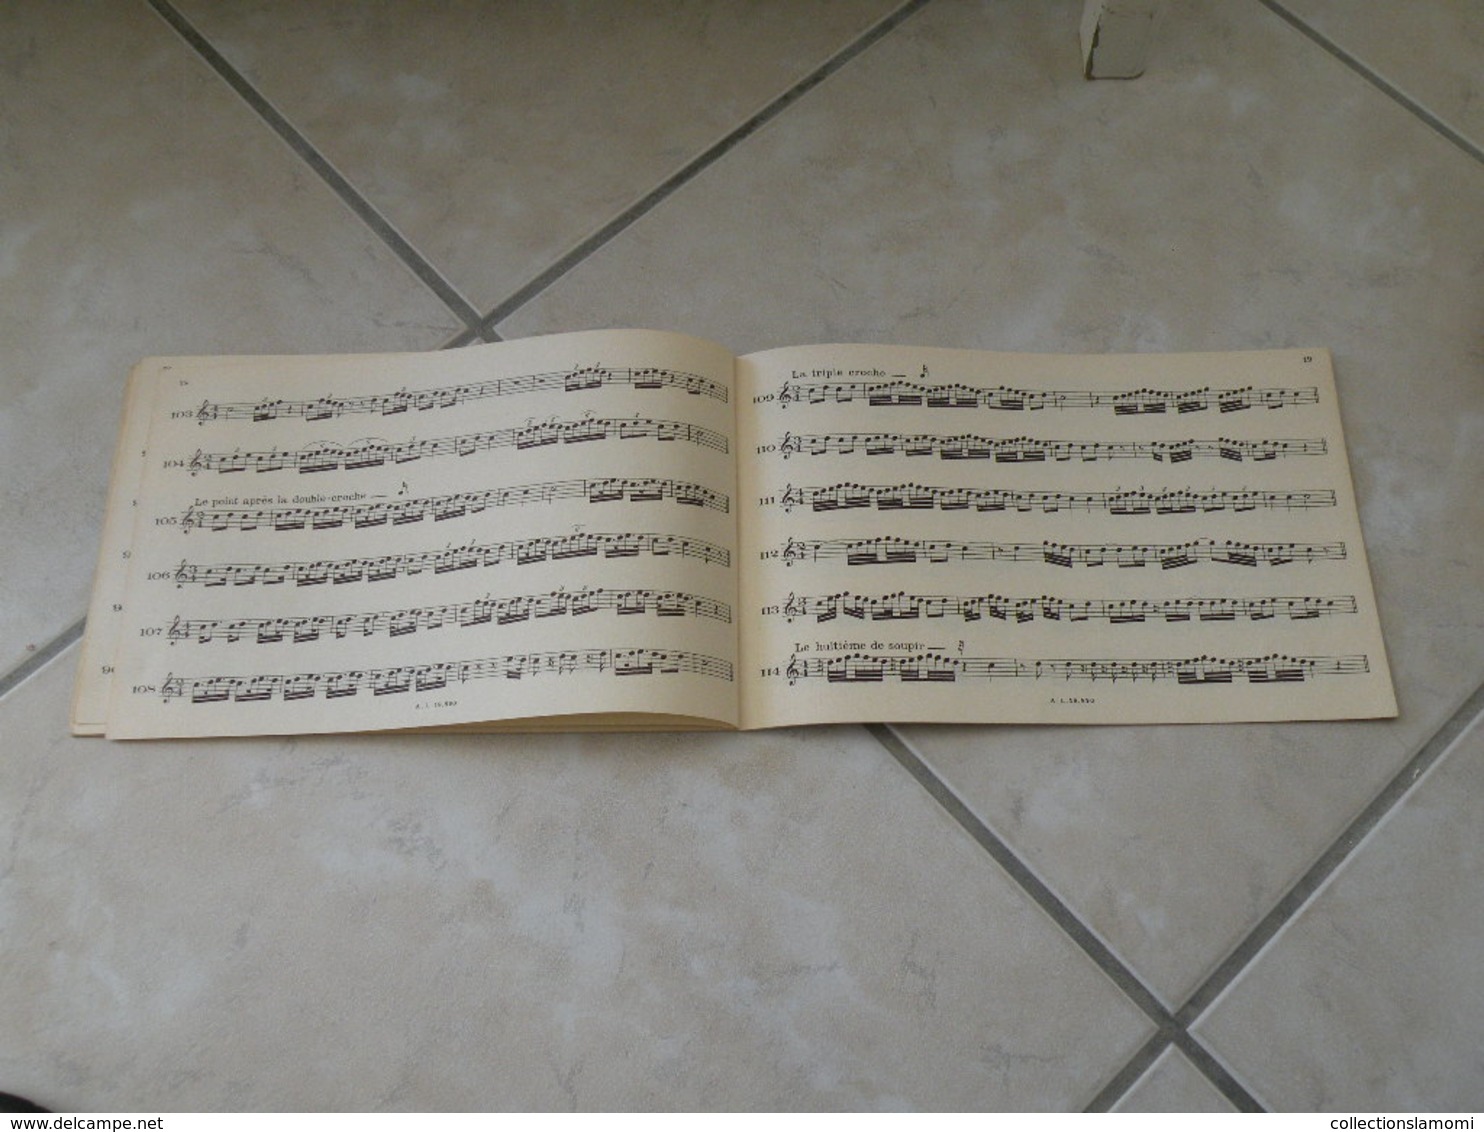 Étude du rythme - Georges Dandelot. Professeur école normale de musique - Musique classique 1935